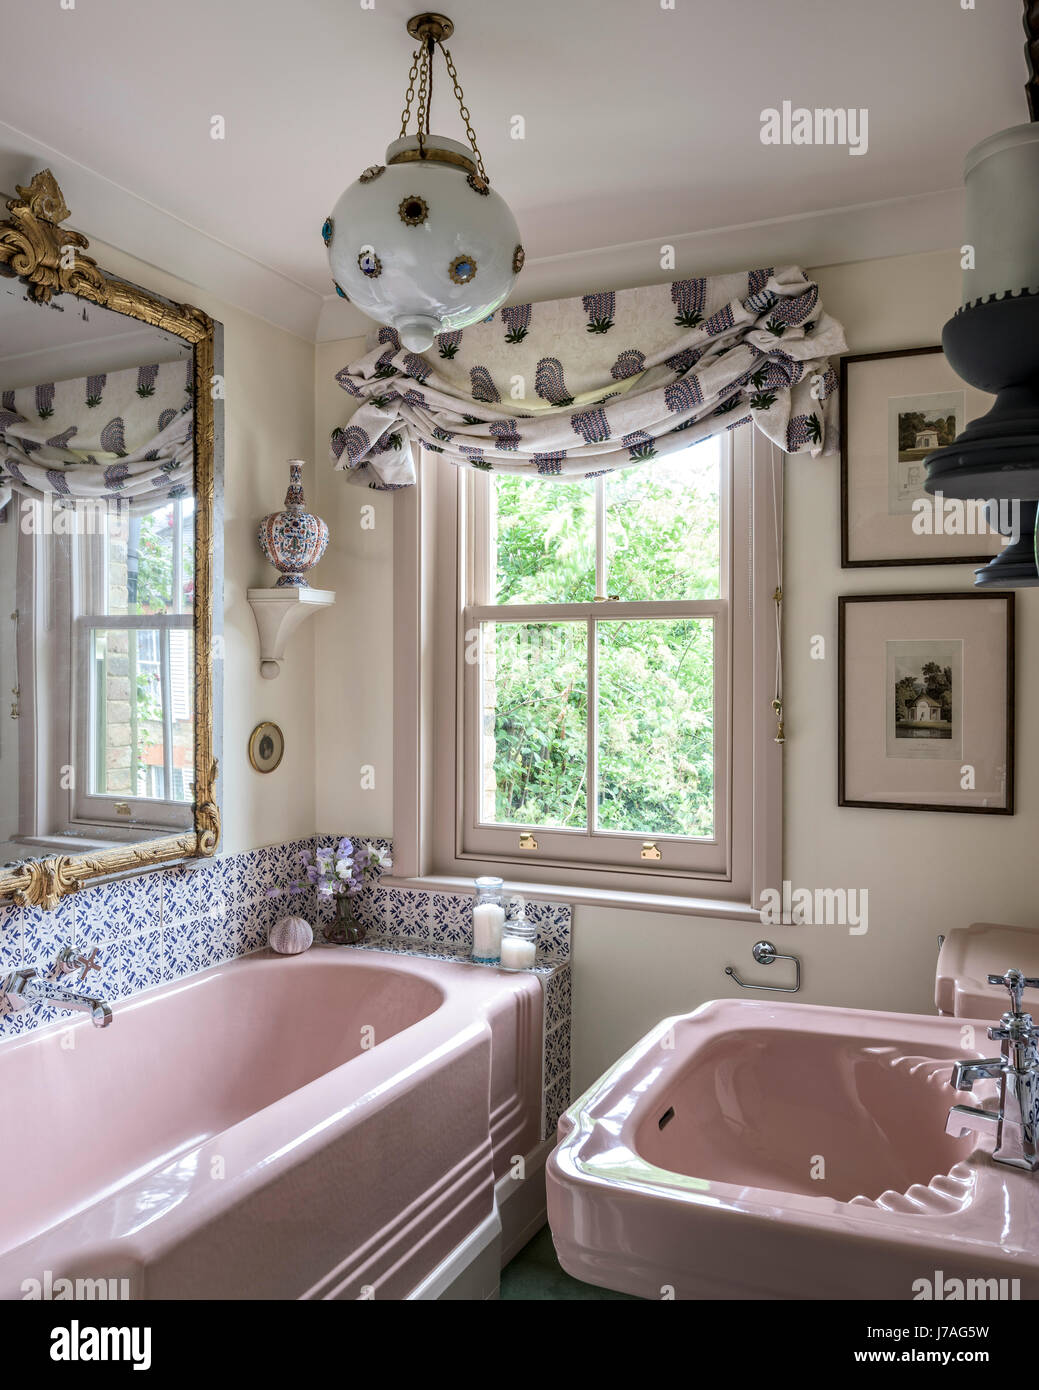 Baignoire en fonte émaillée rose et du bassin dans la salle de bains avec  carreaux de terre et feu miroir doré orné Photo Stock - Alamy